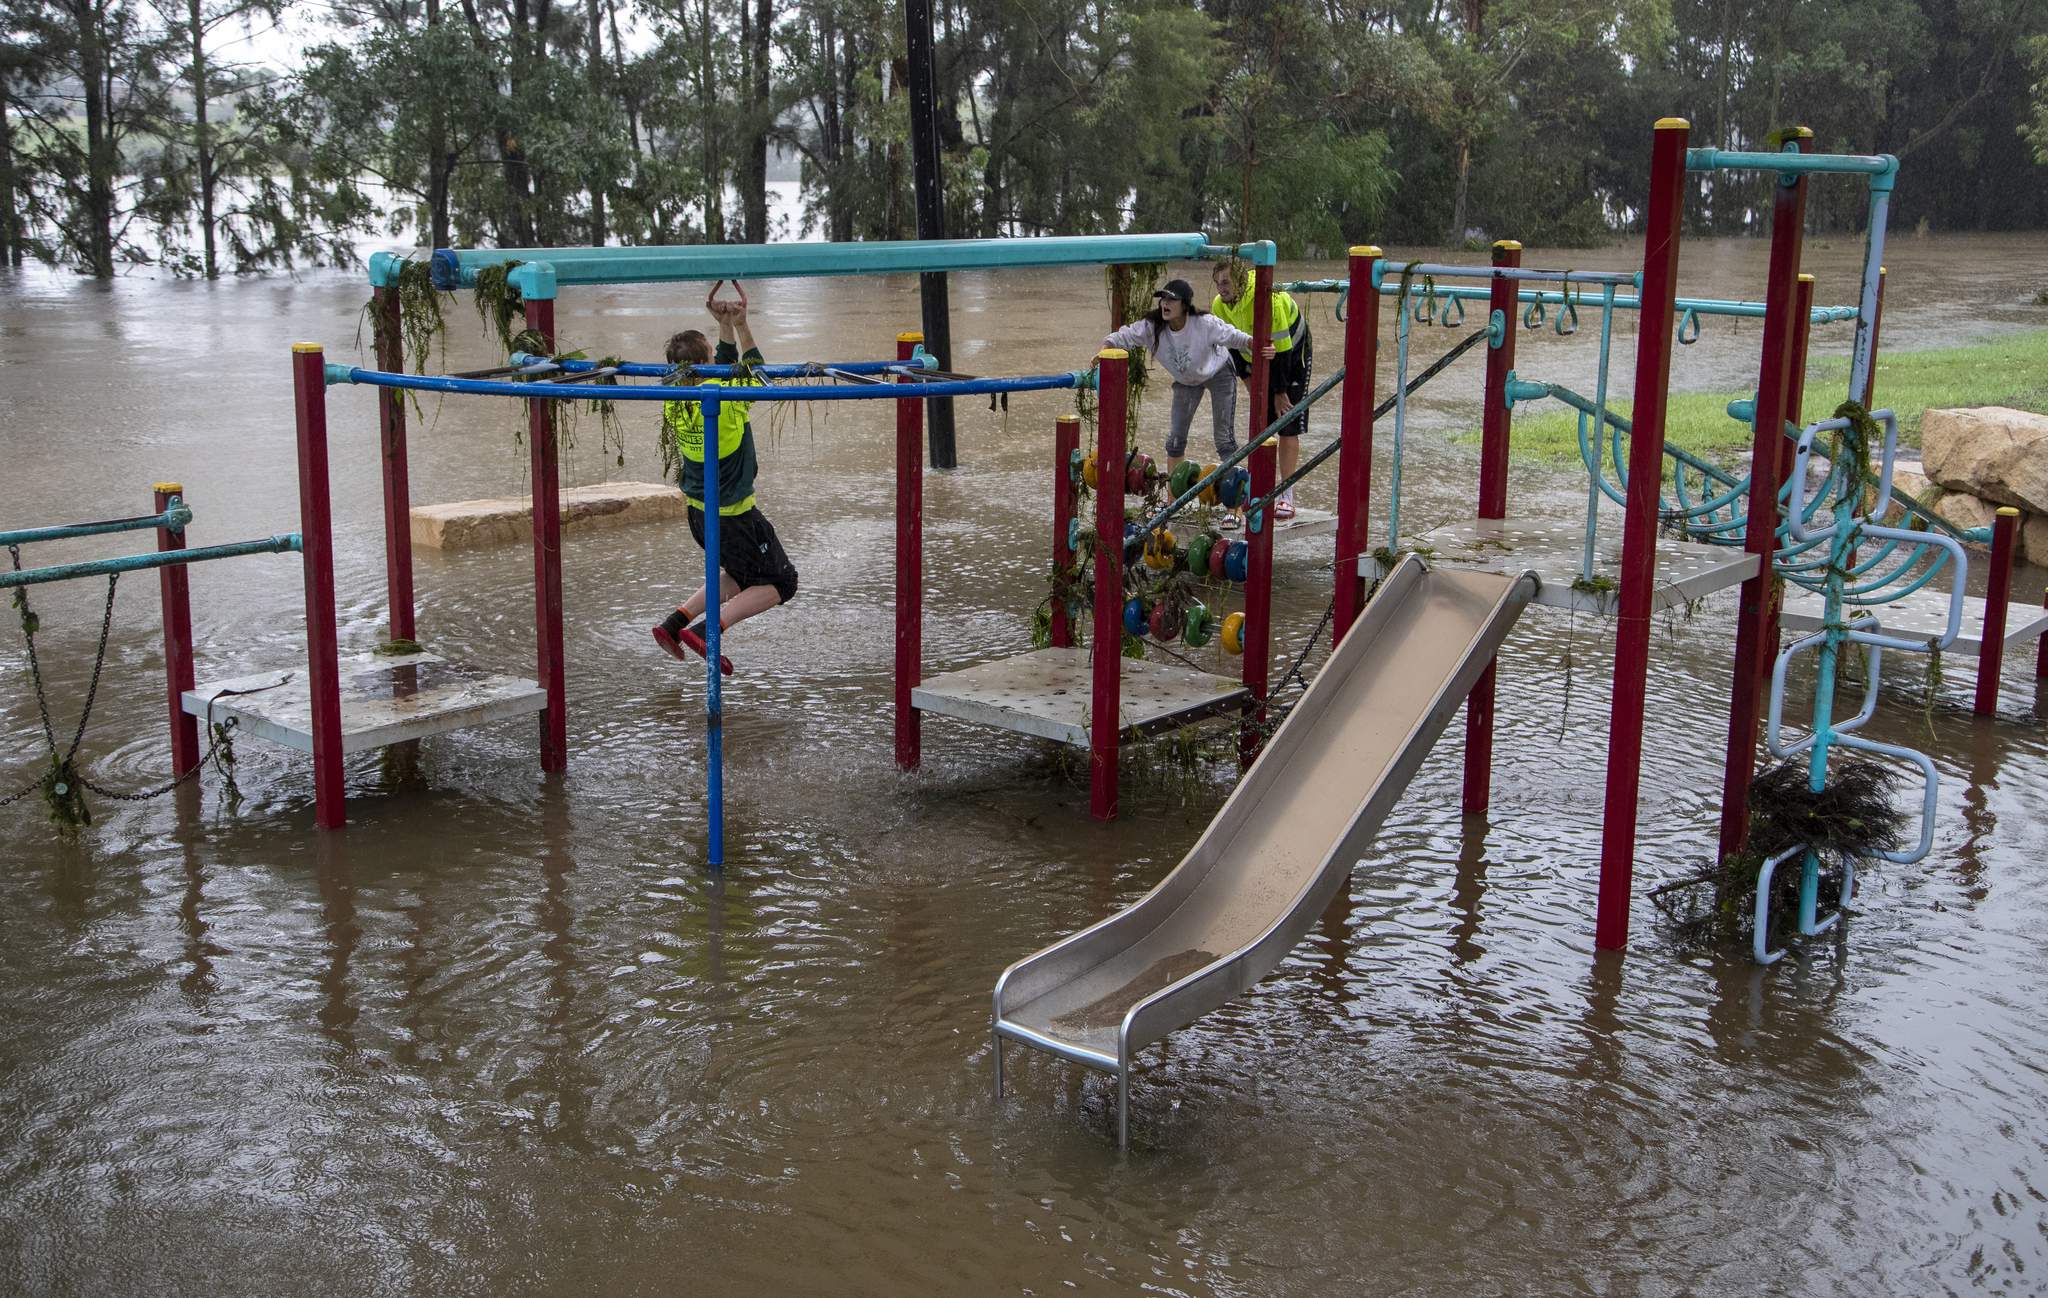 Las inundaciones en Australia aíslan docenas de pueblos